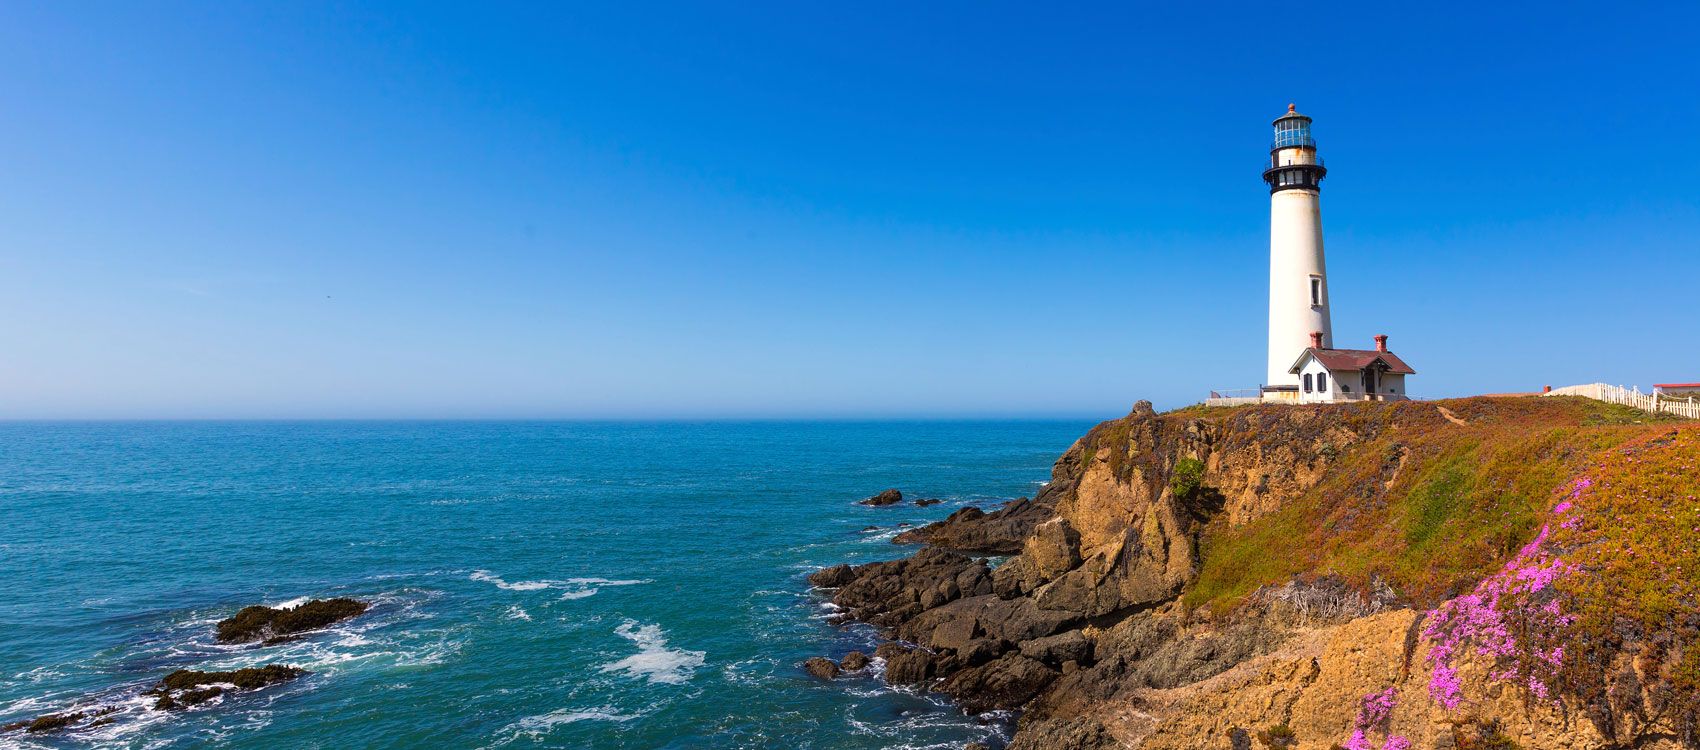 Lighthouse on rocky coastline